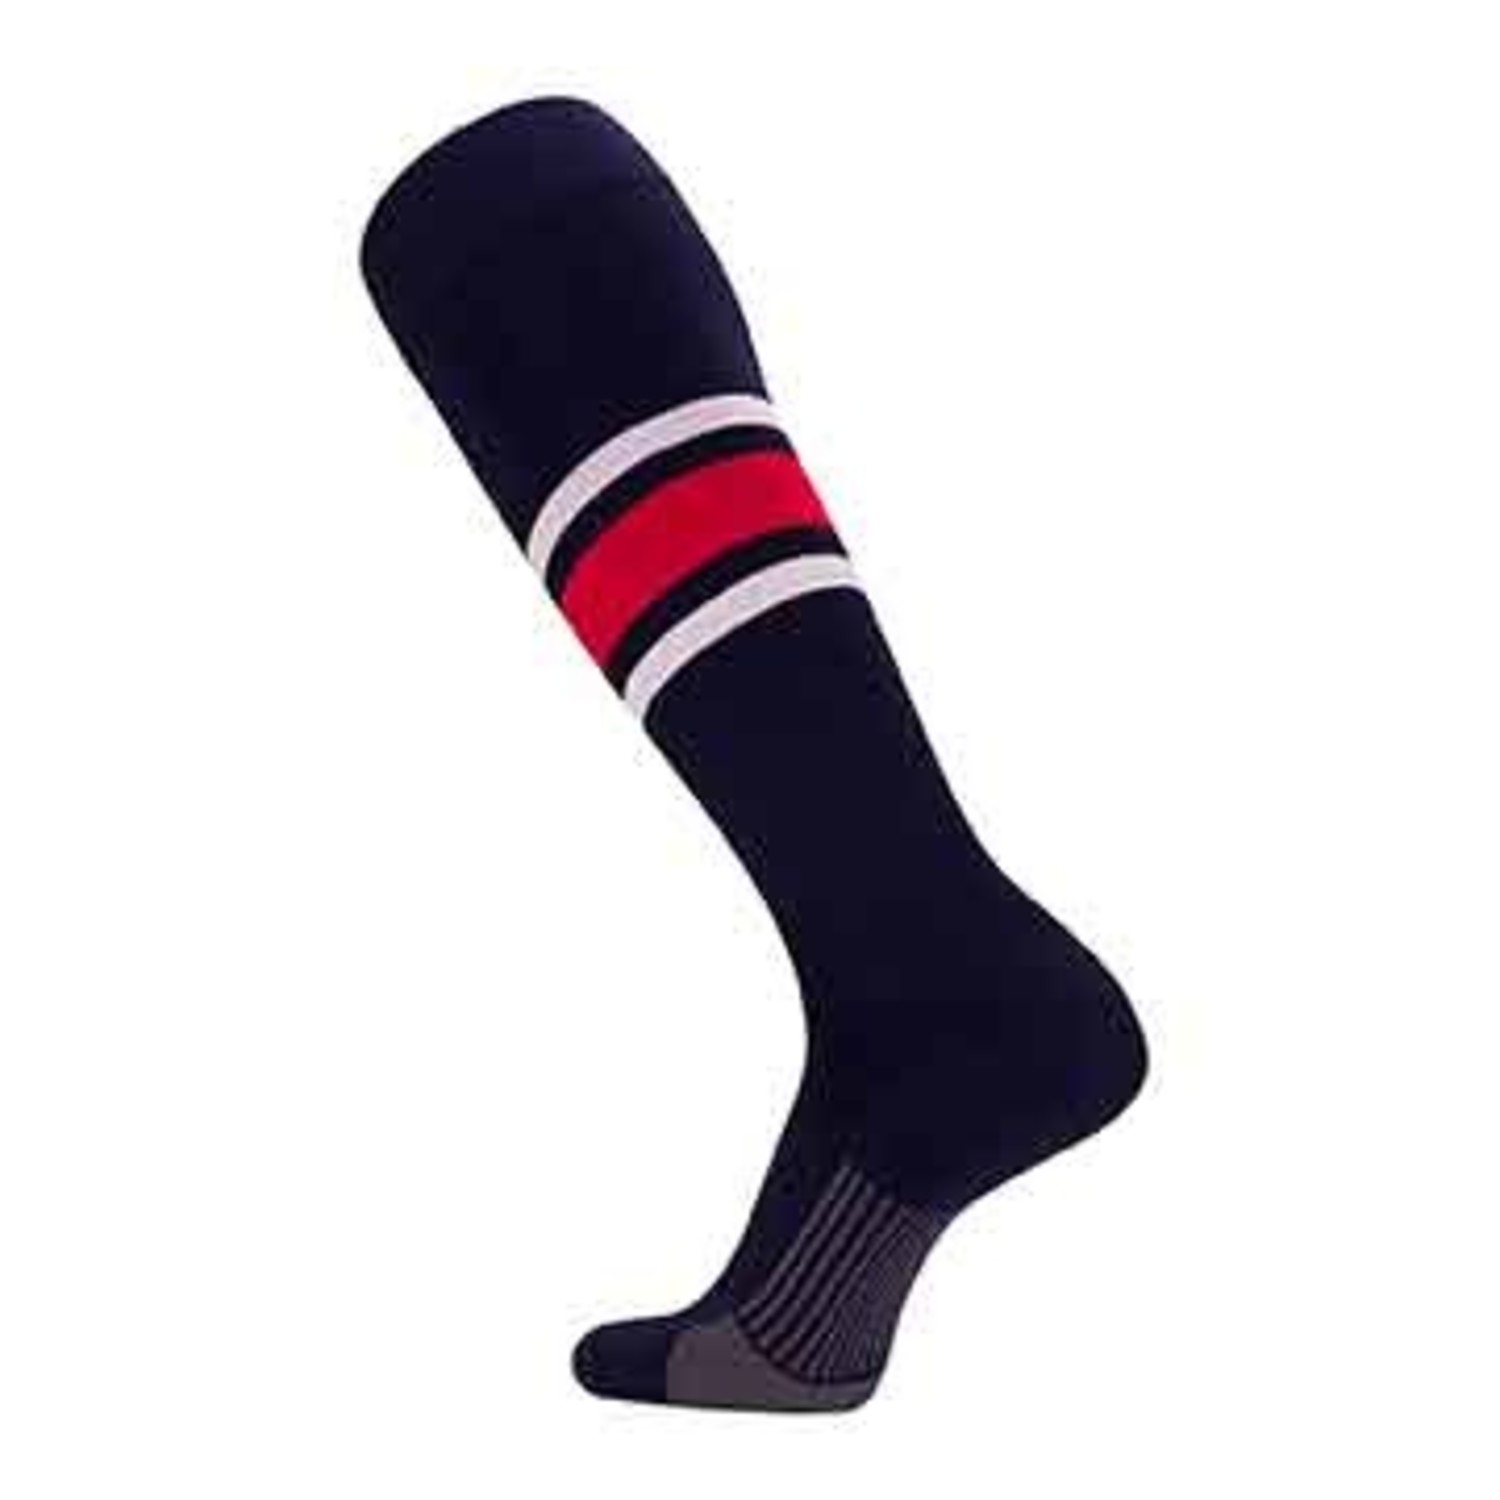 Dugout Striped Over the Knee Baseball Socks Pattern E — TCK